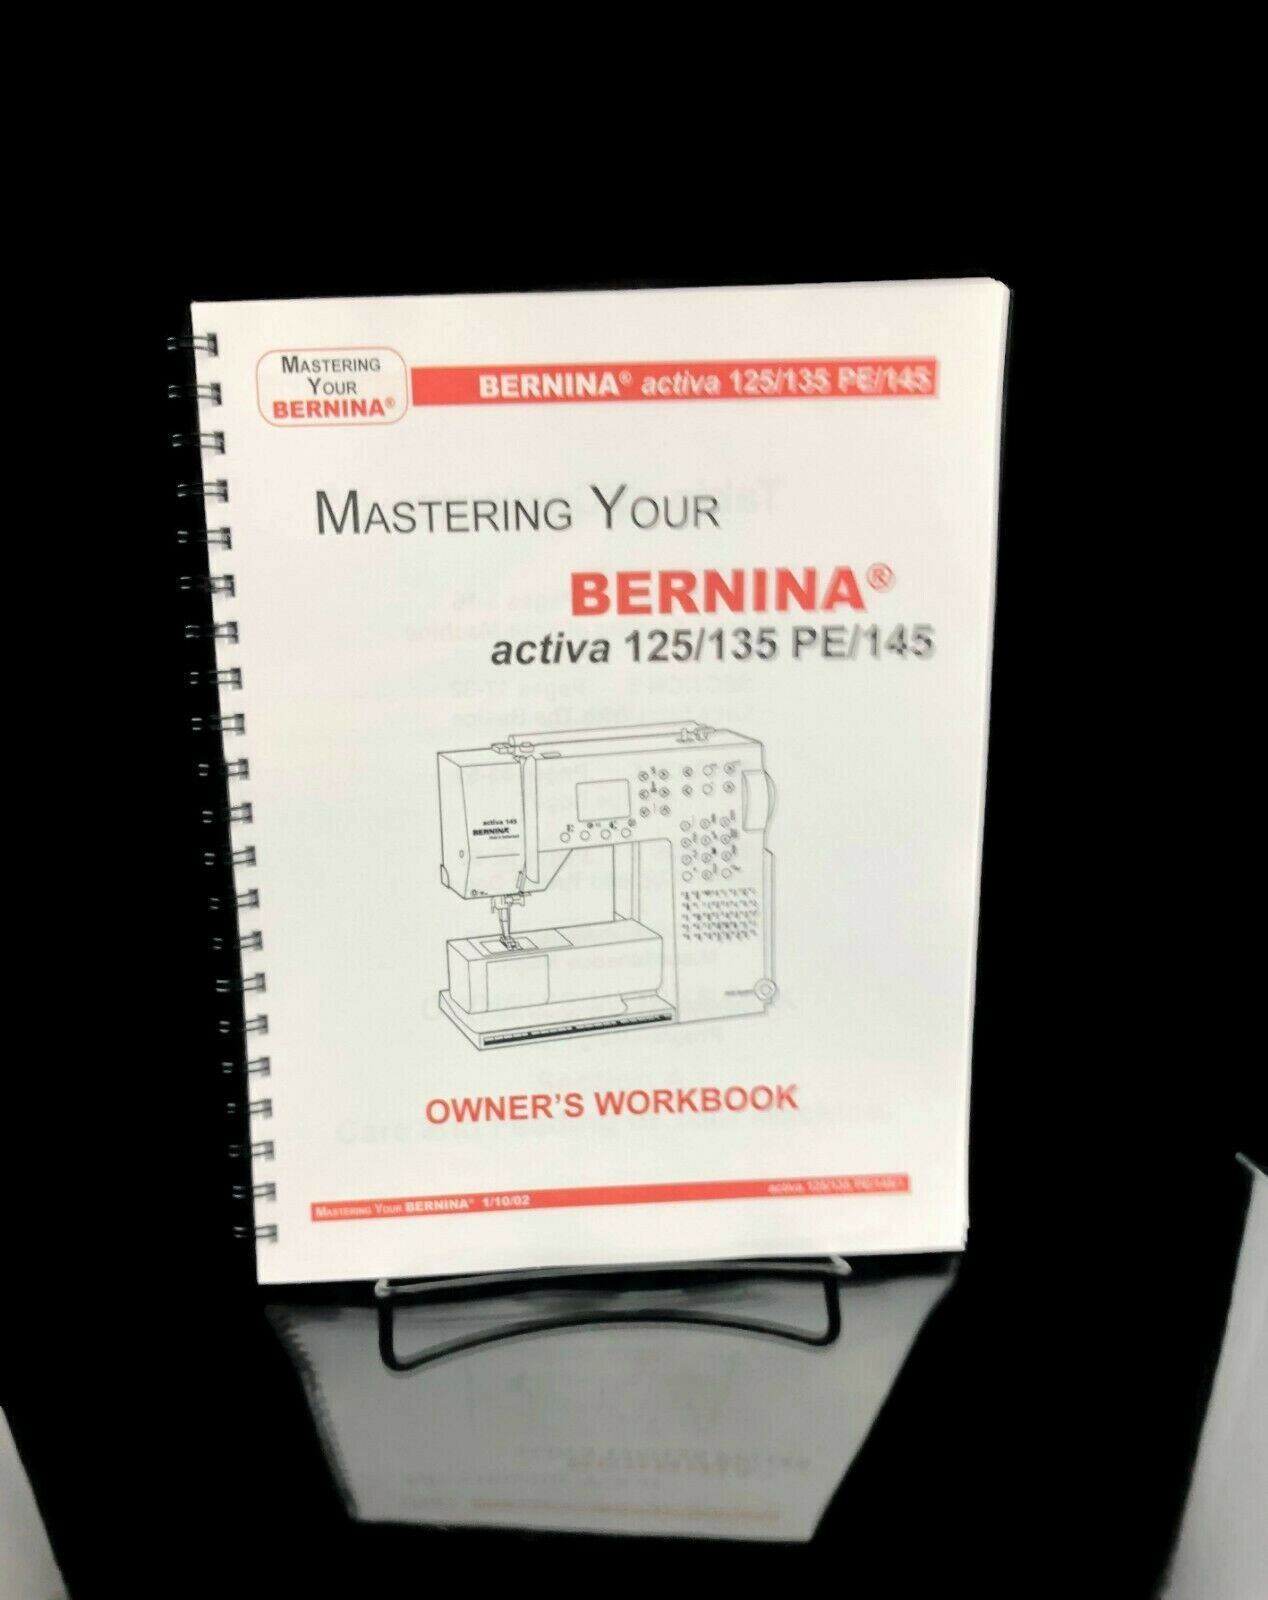 Bernina Activa 125 135 Pe 145 Work Book Reprint Metal Coil Bound